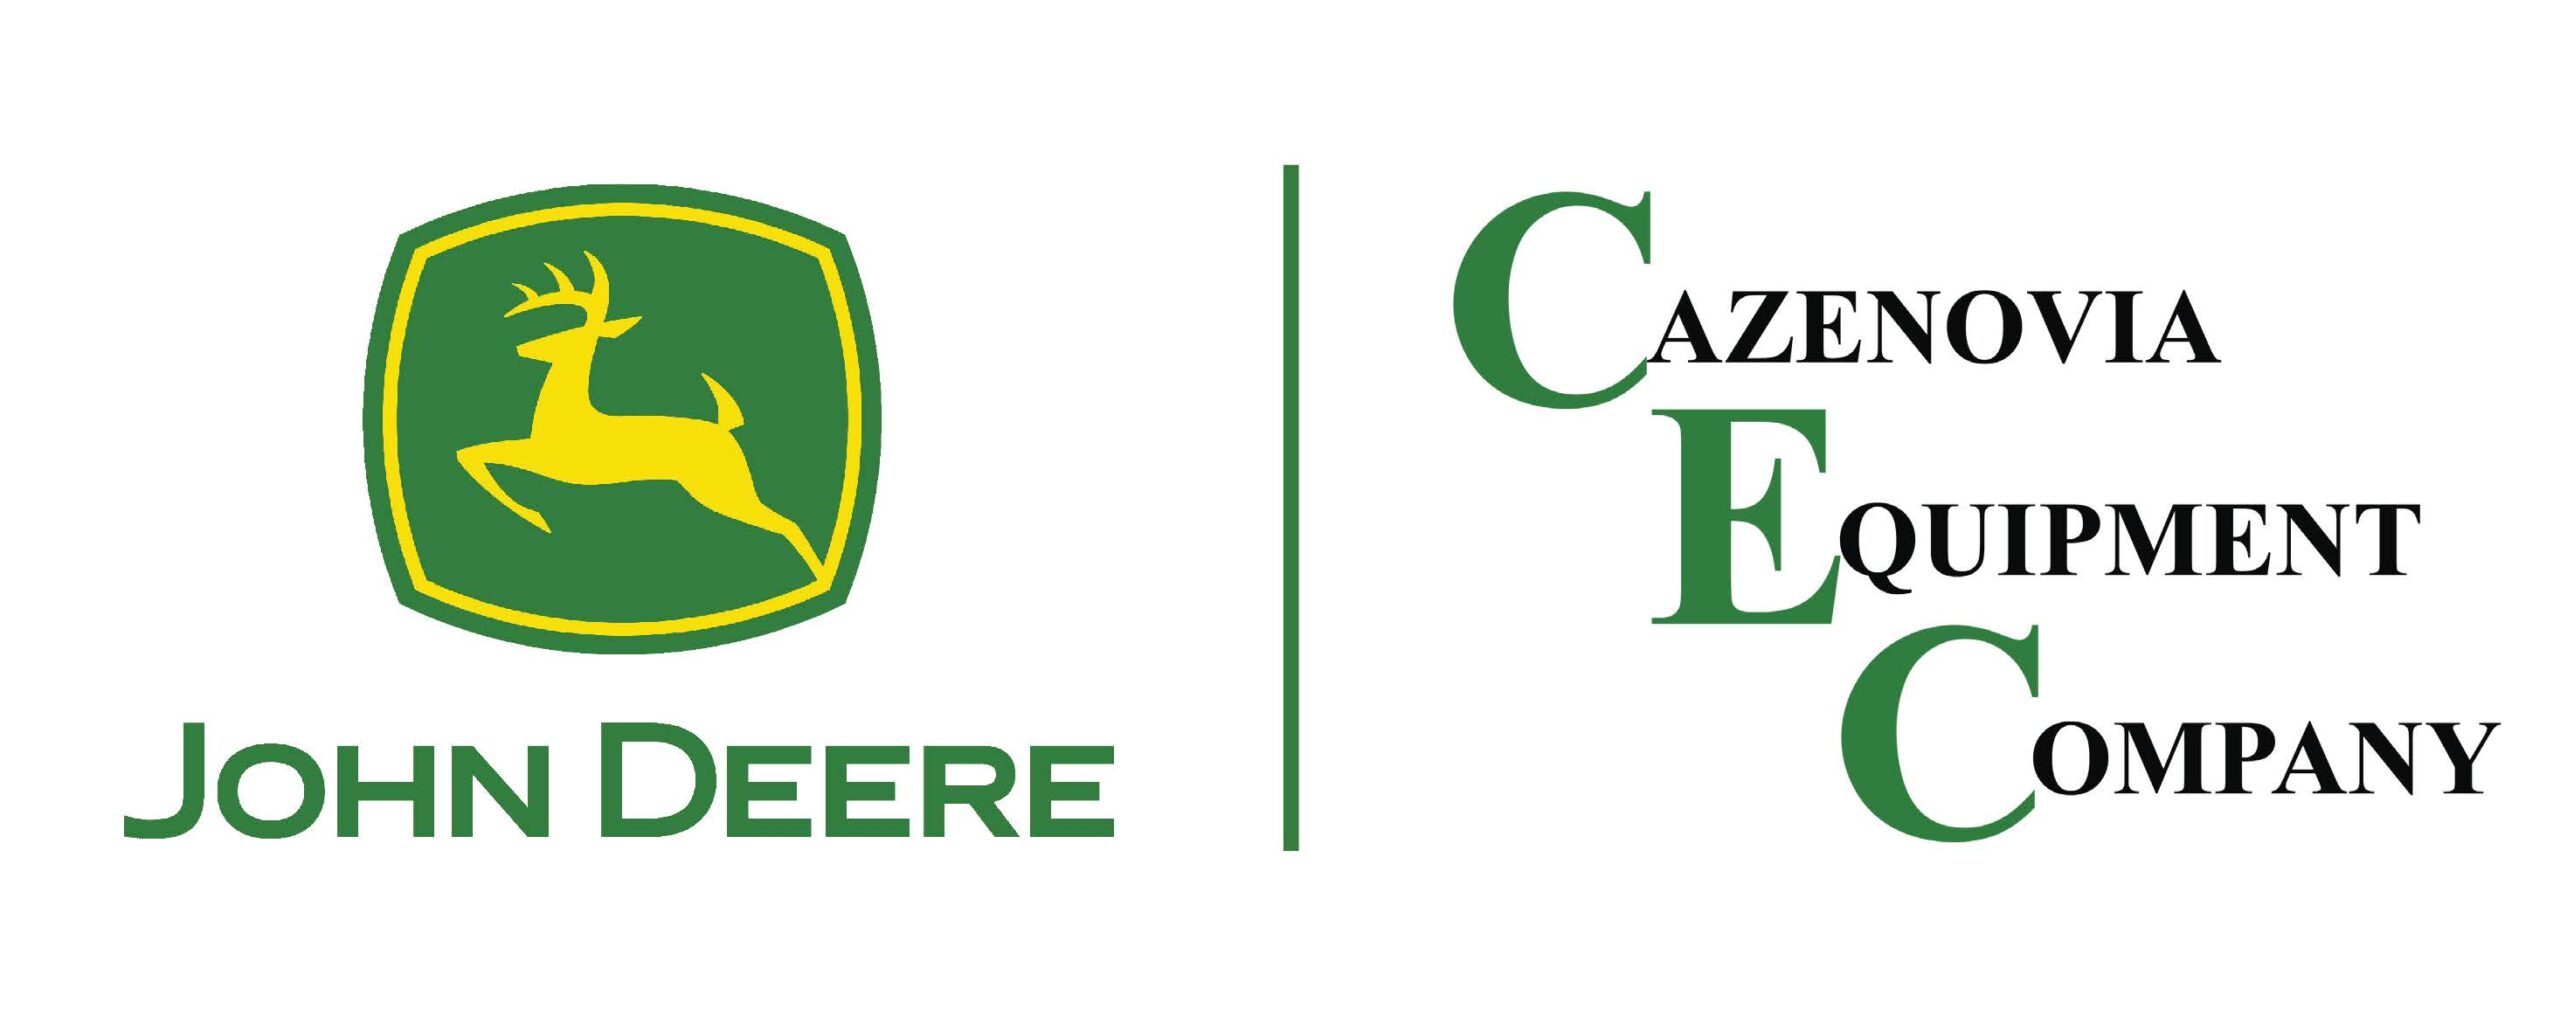 Caz Equip Logo 2022